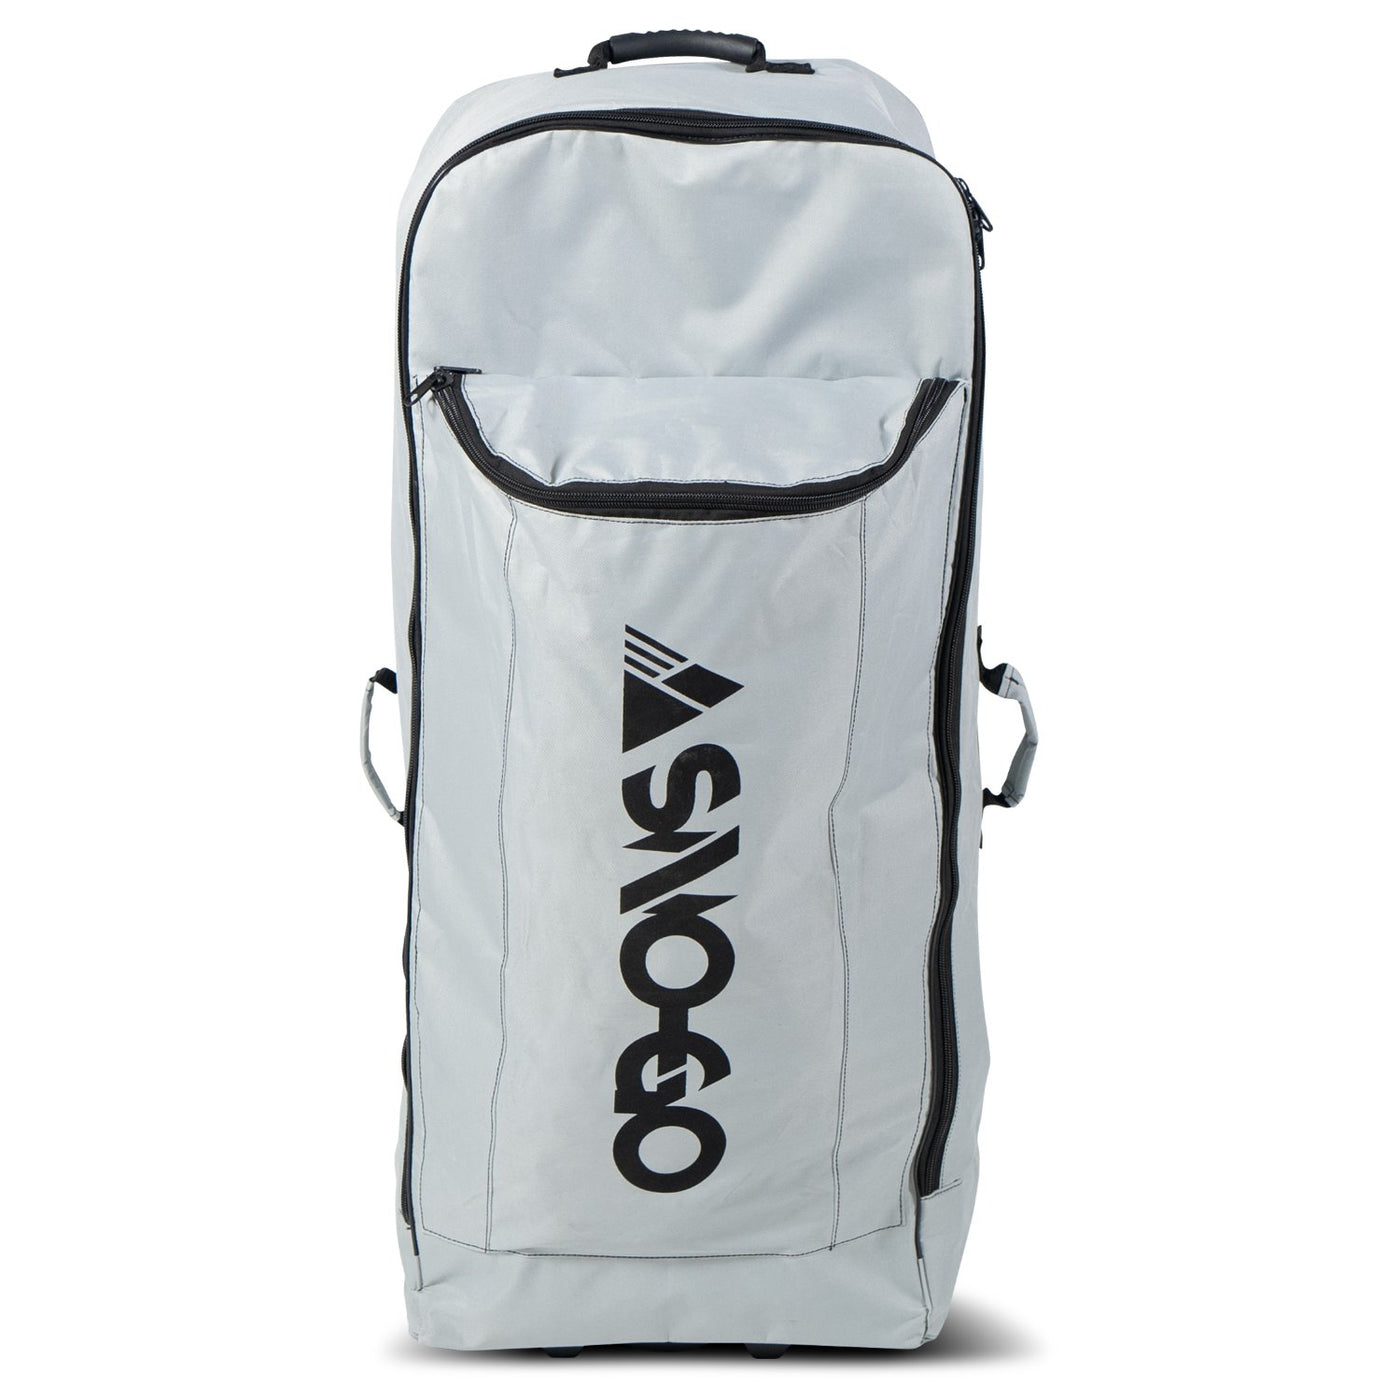 SNO-GO Travel Bag